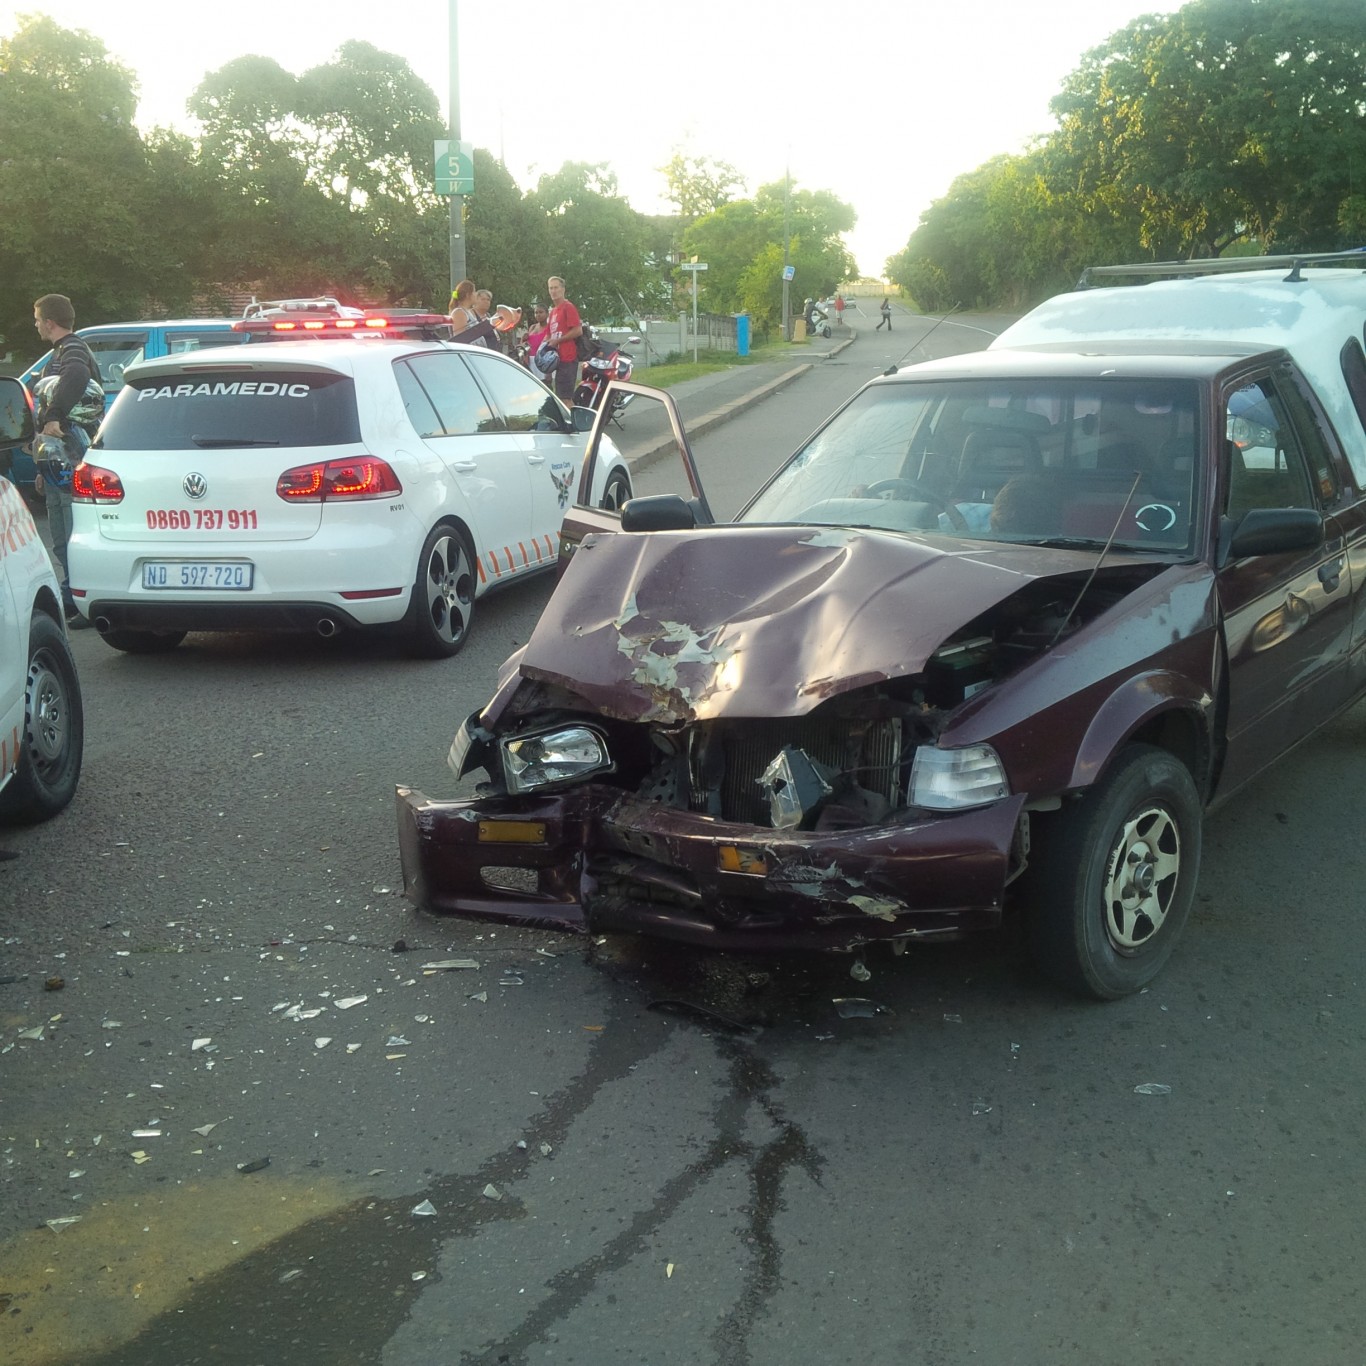 Pedestrian critically injured in Pietermaritzburg